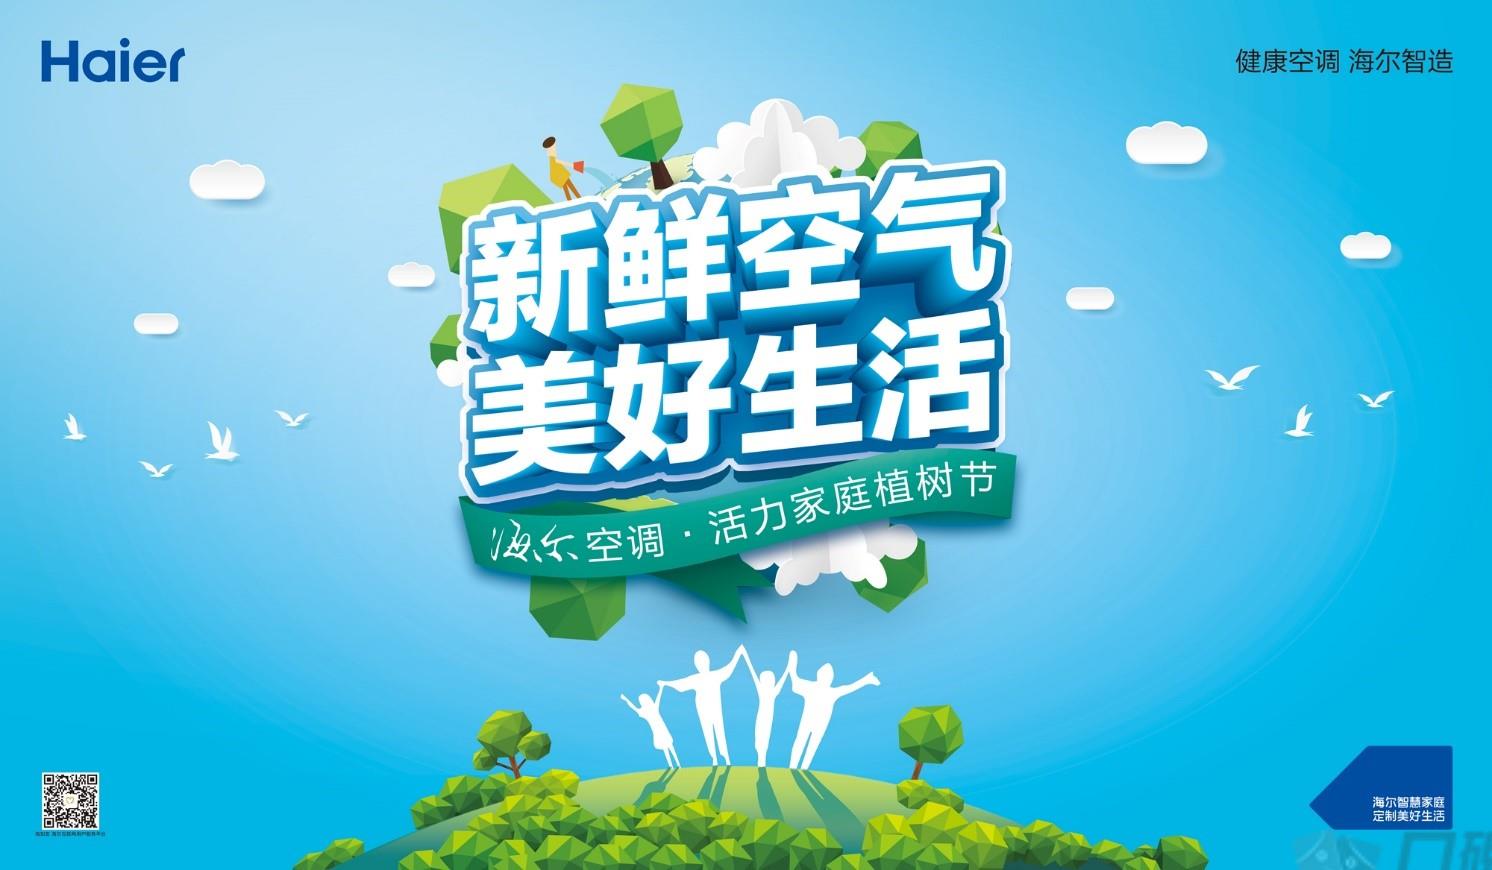 所有北京市民,海尔空调有一份植树权益您尚未领取